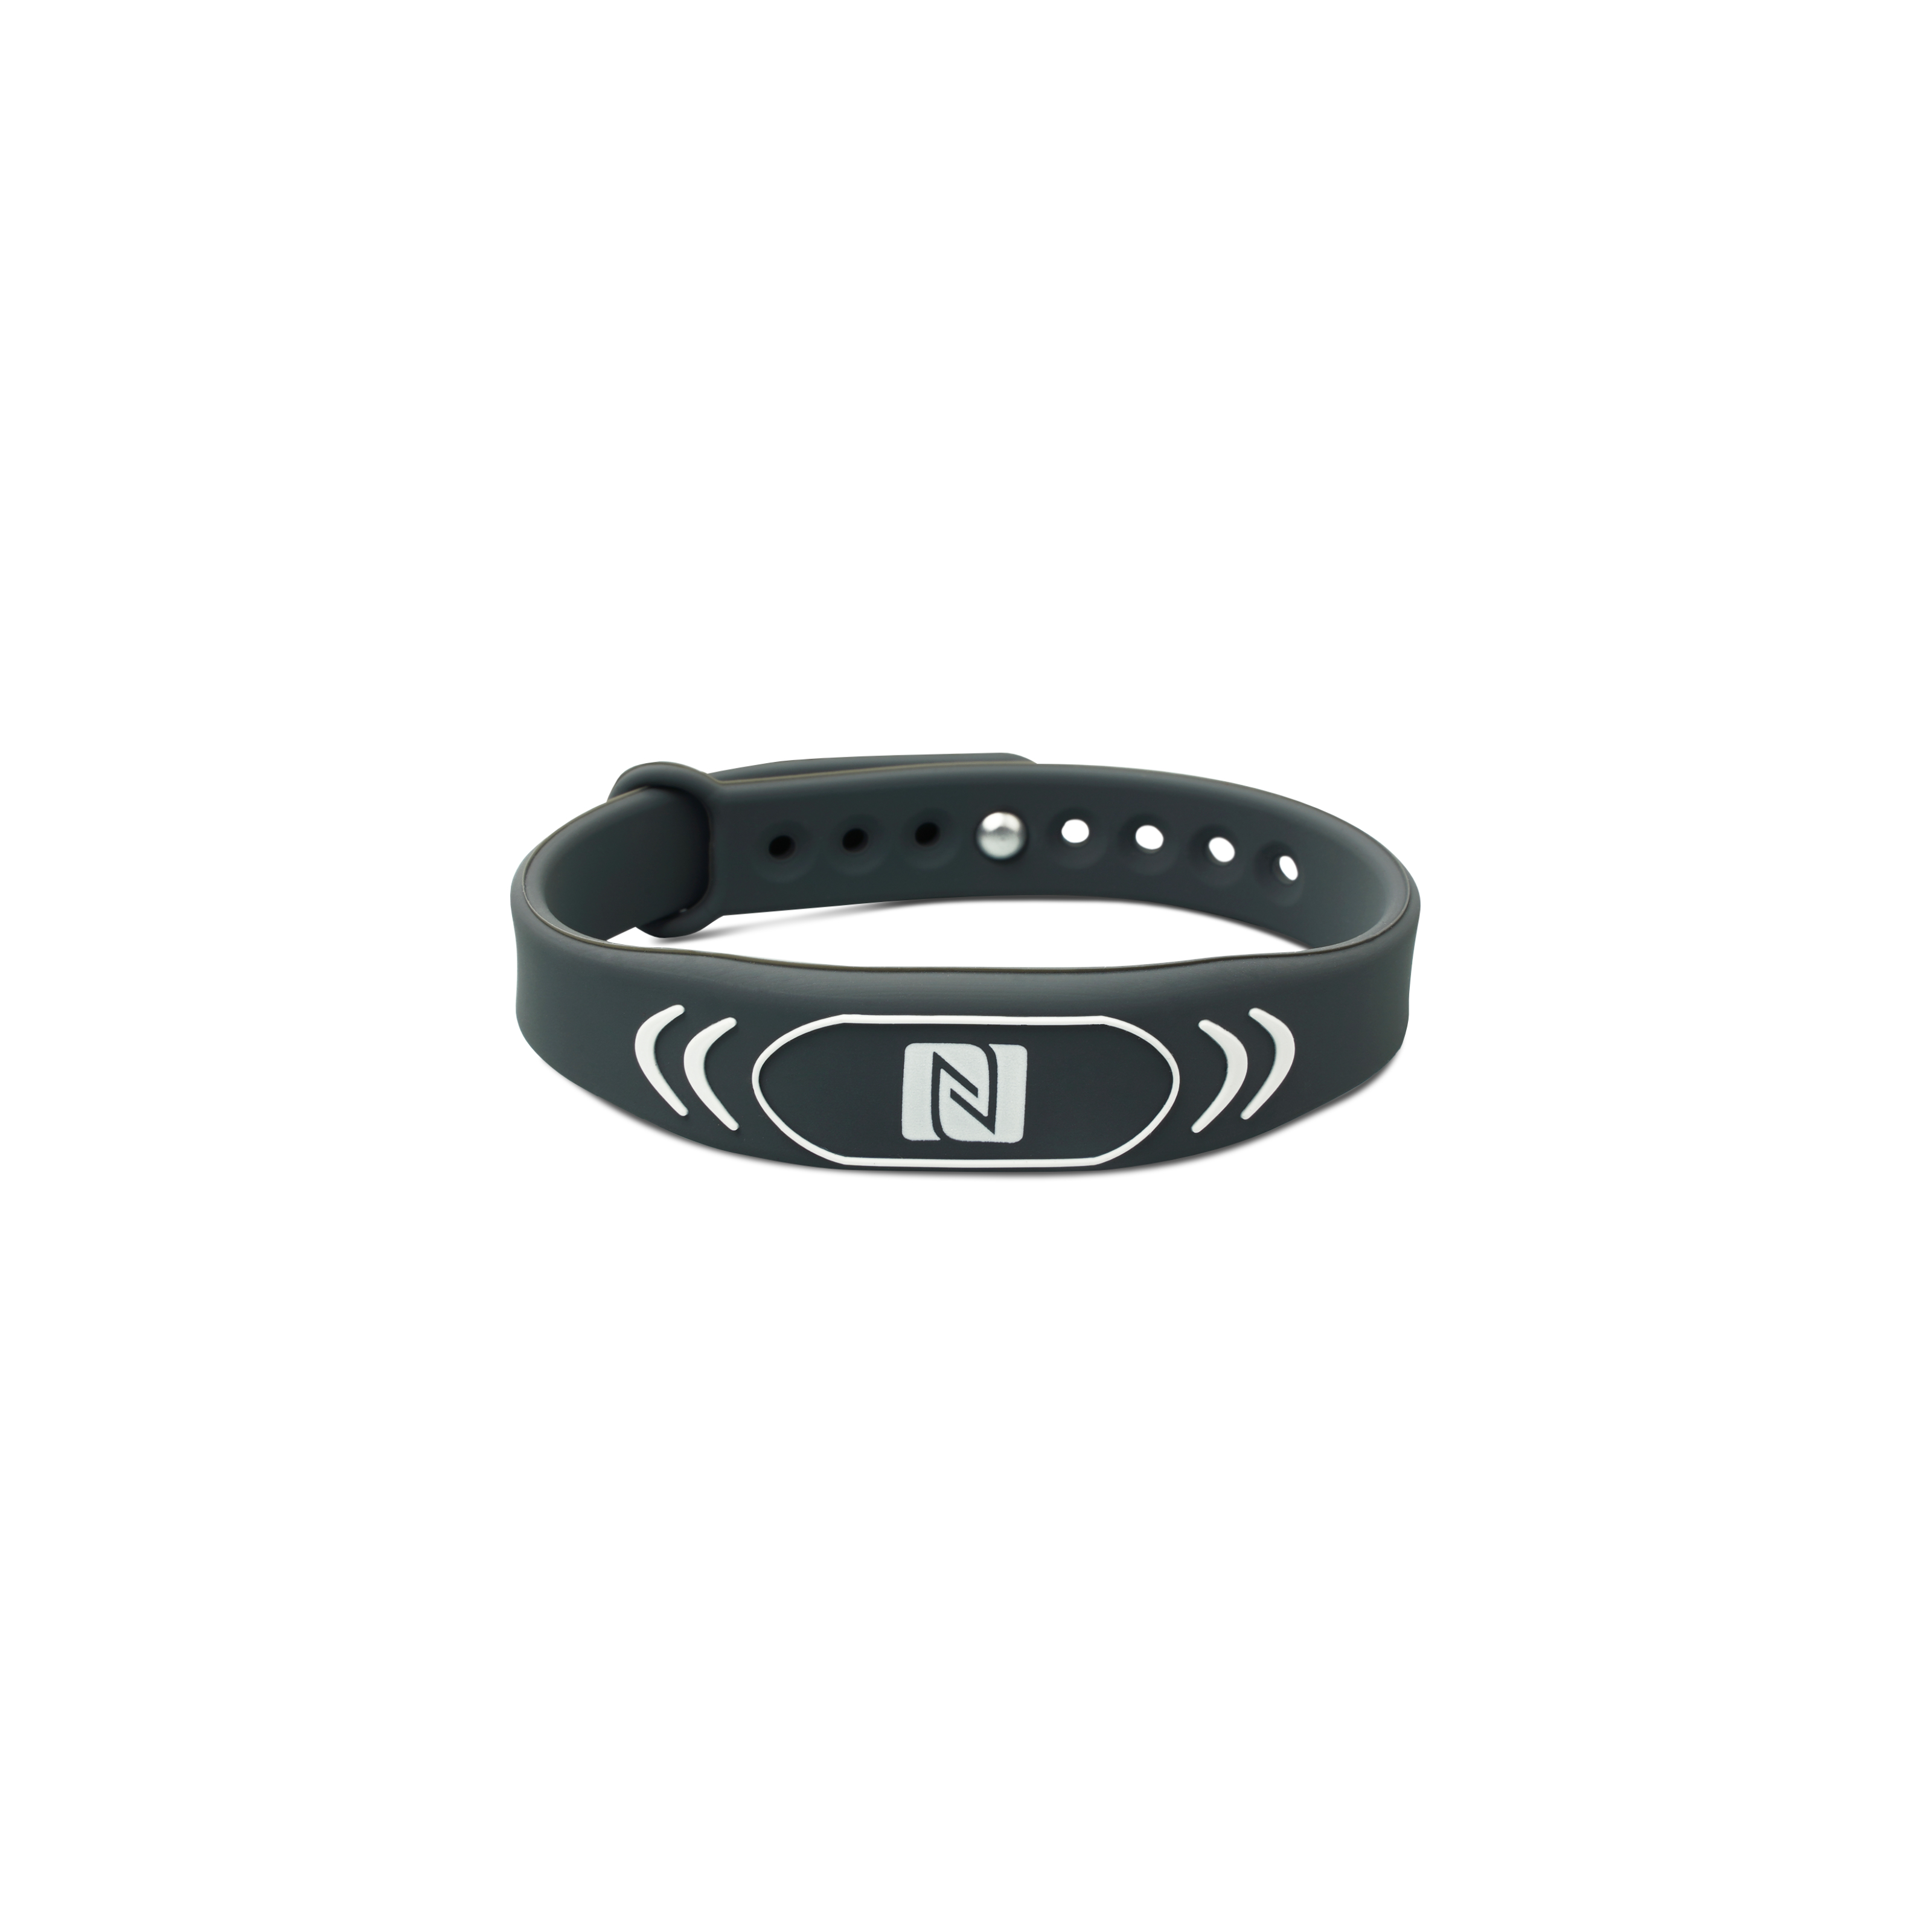 Vorderseite des geschlossenen NFC Armband aus Silikon in grau